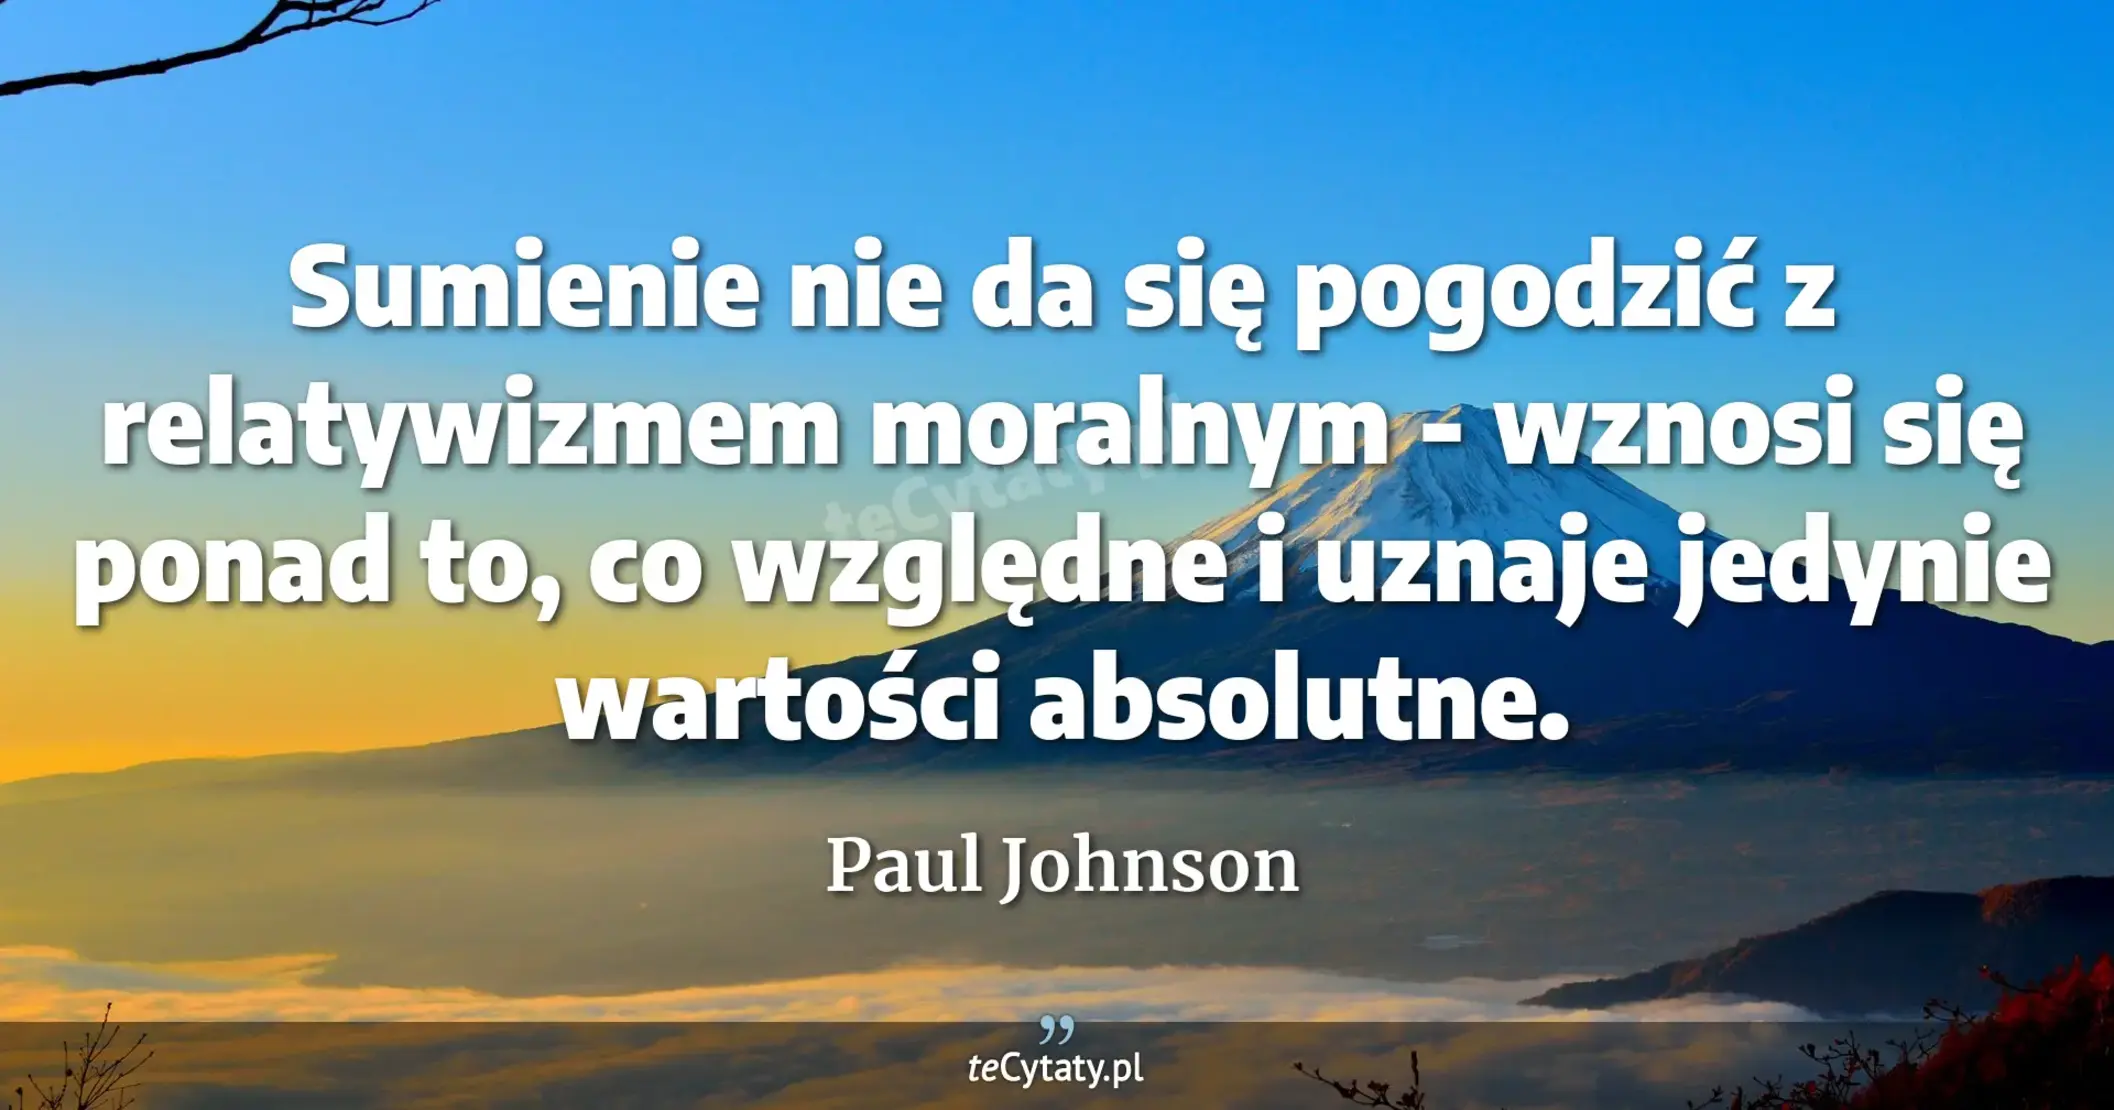 Sumienie nie da się pogodzić z relatywizmem moralnym - wznosi się ponad to, co względne i uznaje jedynie wartości absolutne. - Paul Johnson